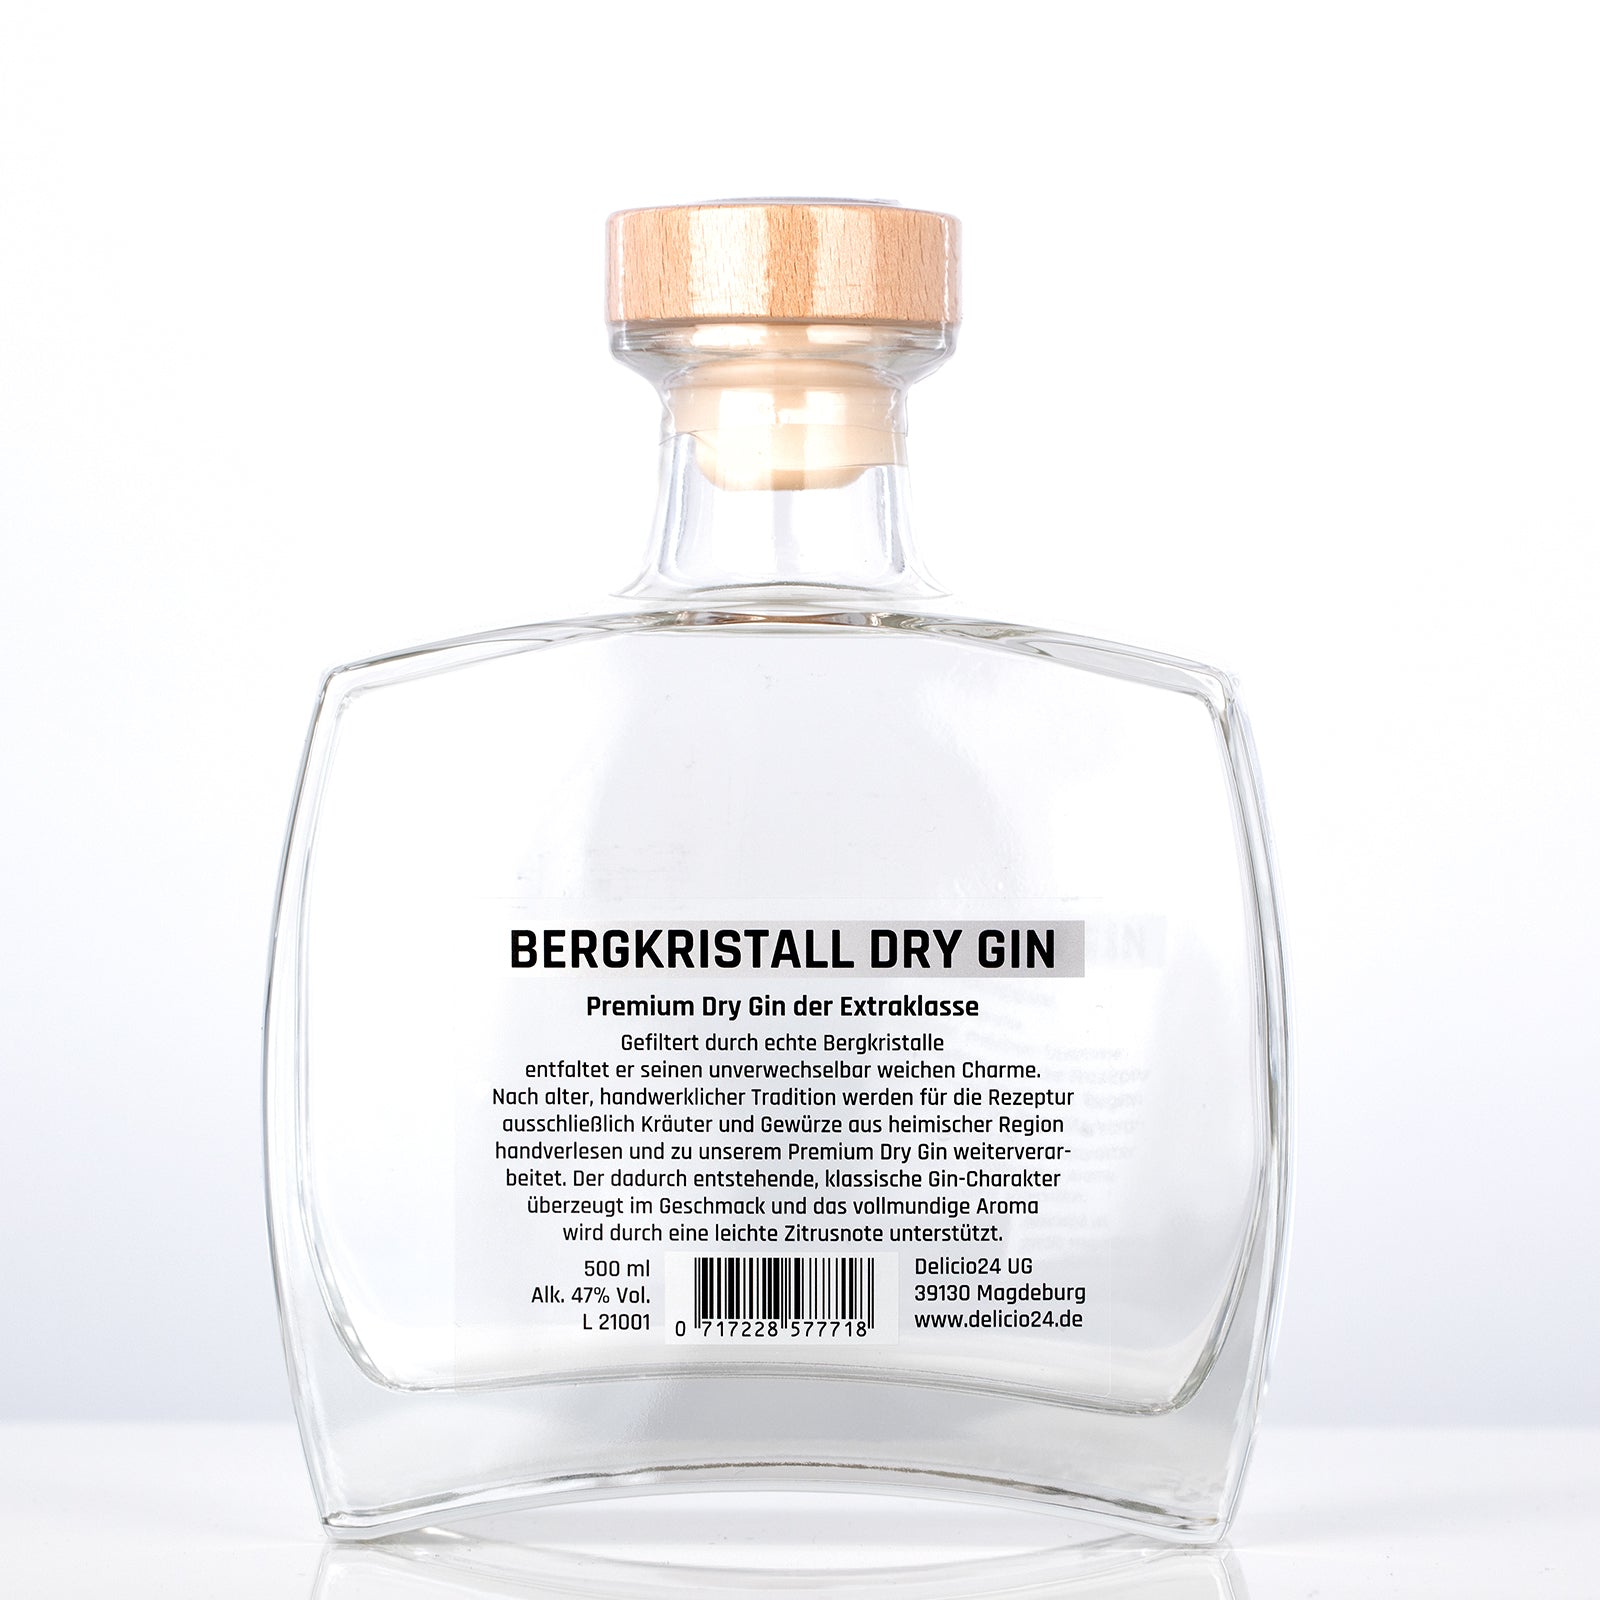 Bergkristall Dry Gin